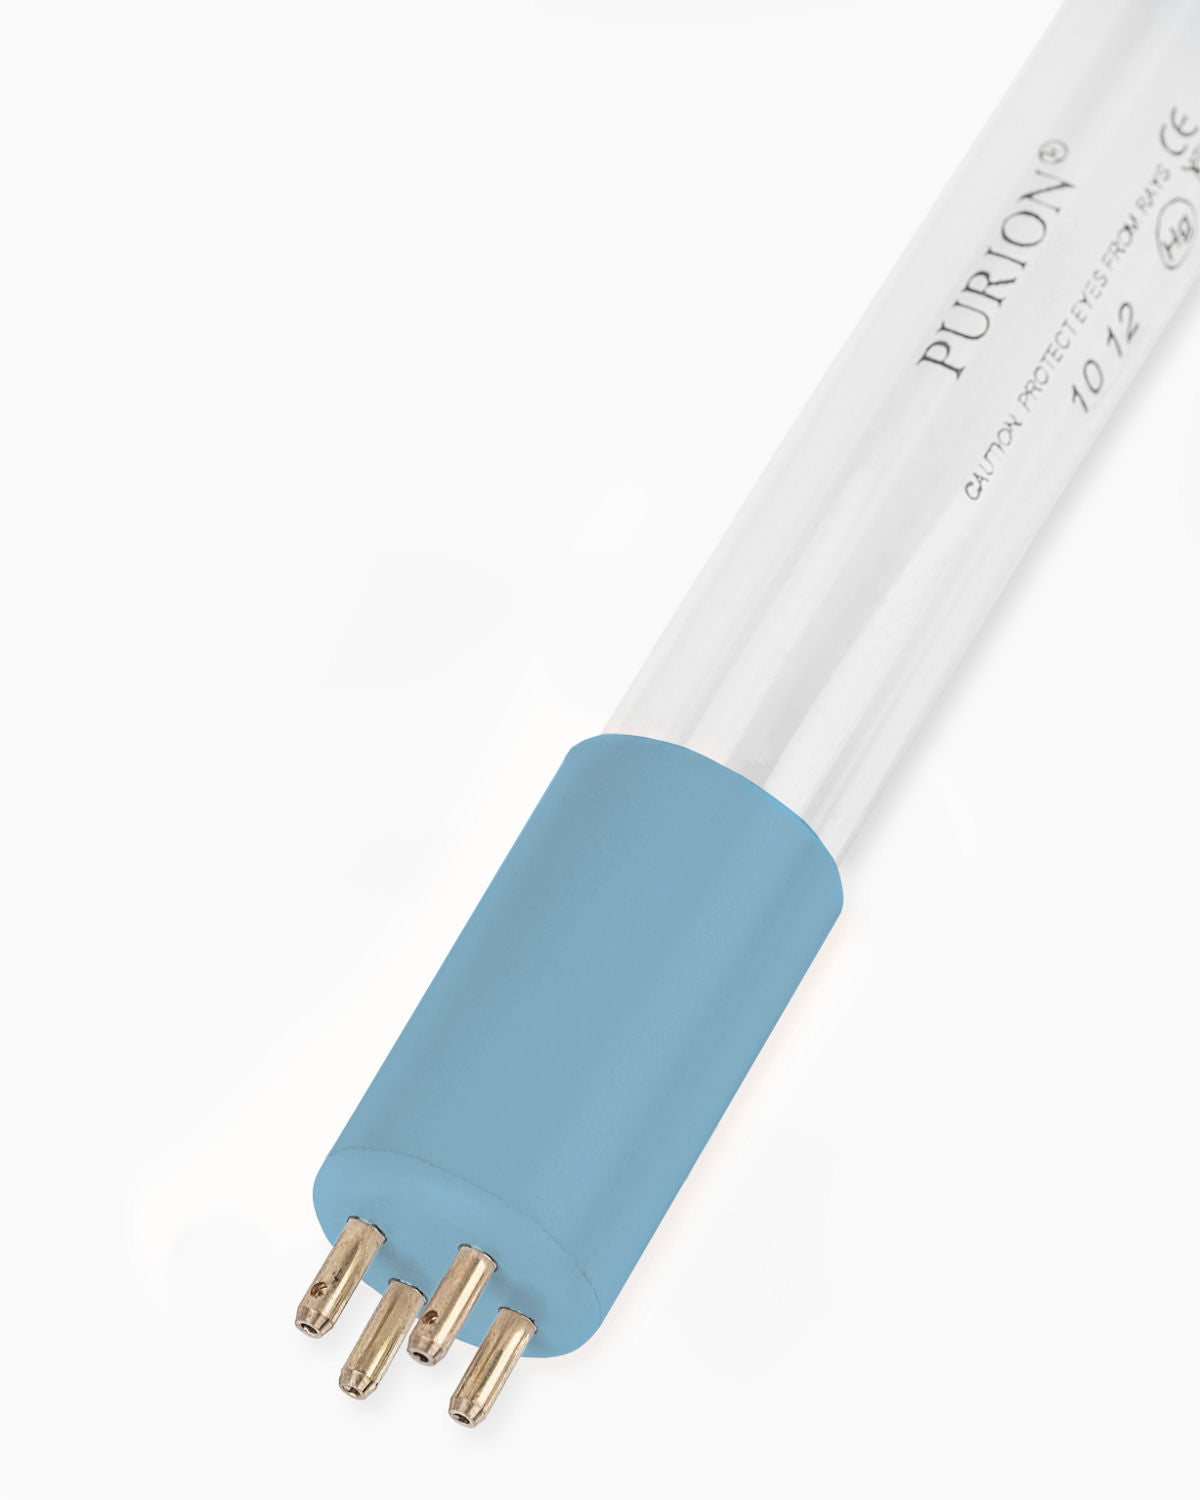 Eine PURION 1000 PVC-U 12V/24V DC Basic Blaulichtröhre auf weißem Hintergrund, die UV-C-Reinigung bietet.